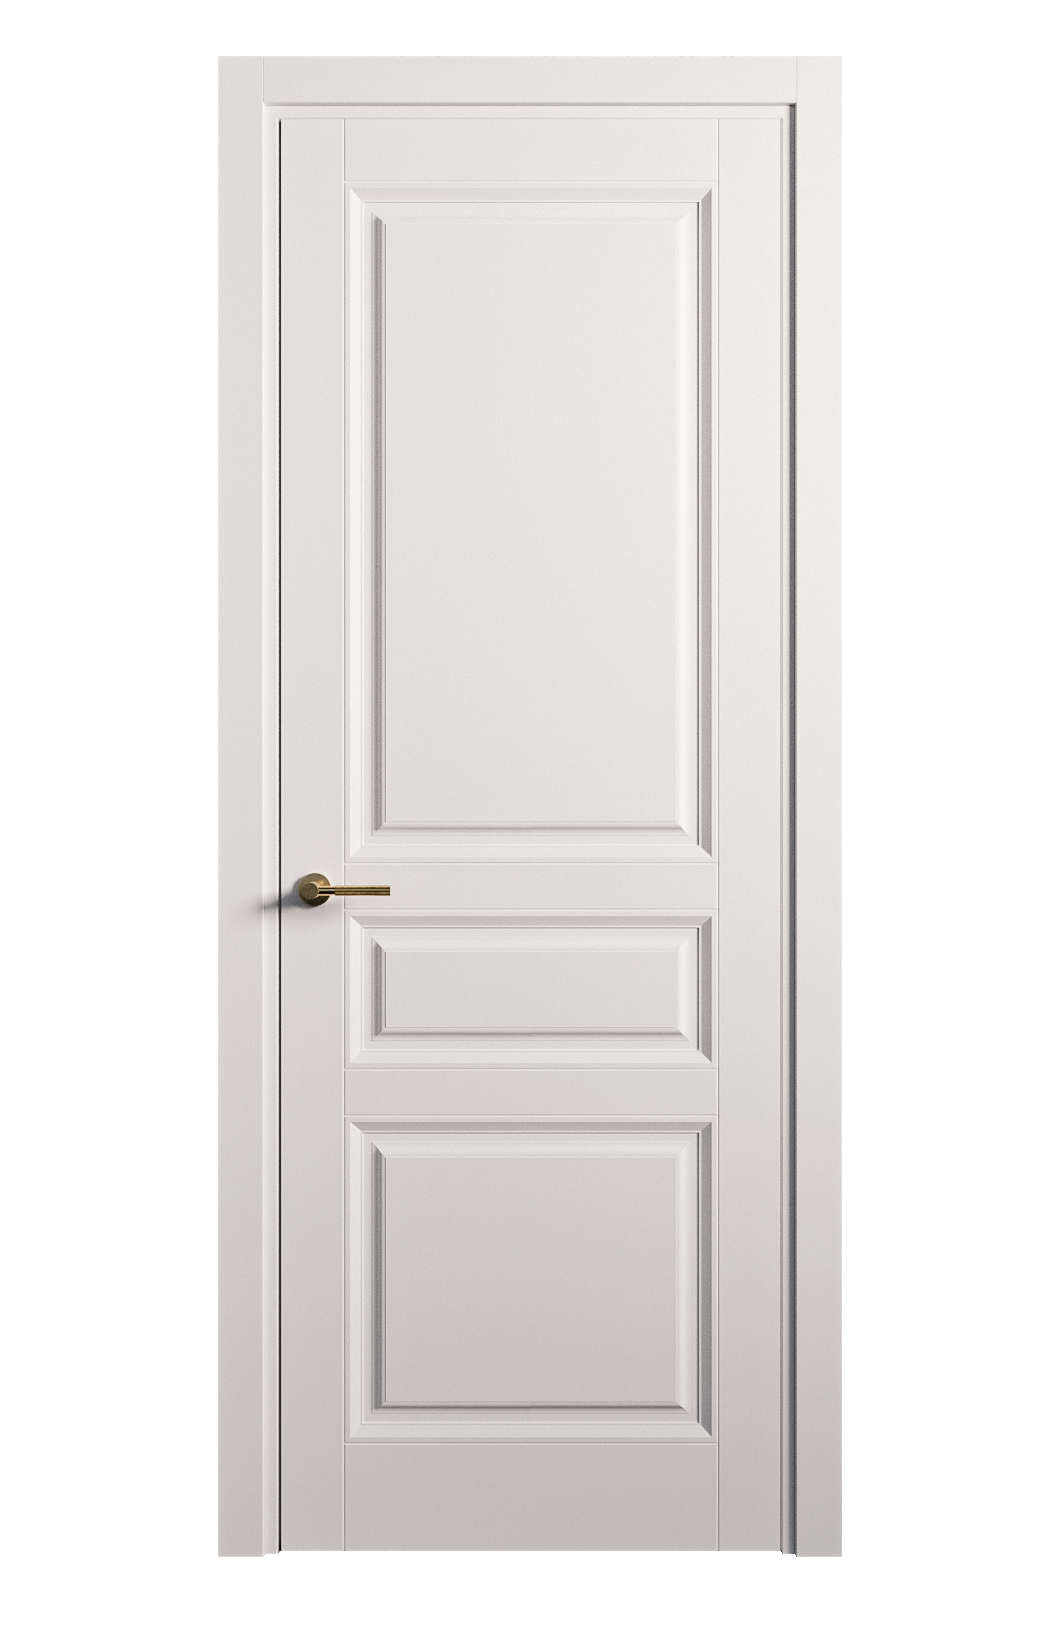 Межкомнатная дверь Venezia-2 глухая эмаль ral 9003 25801